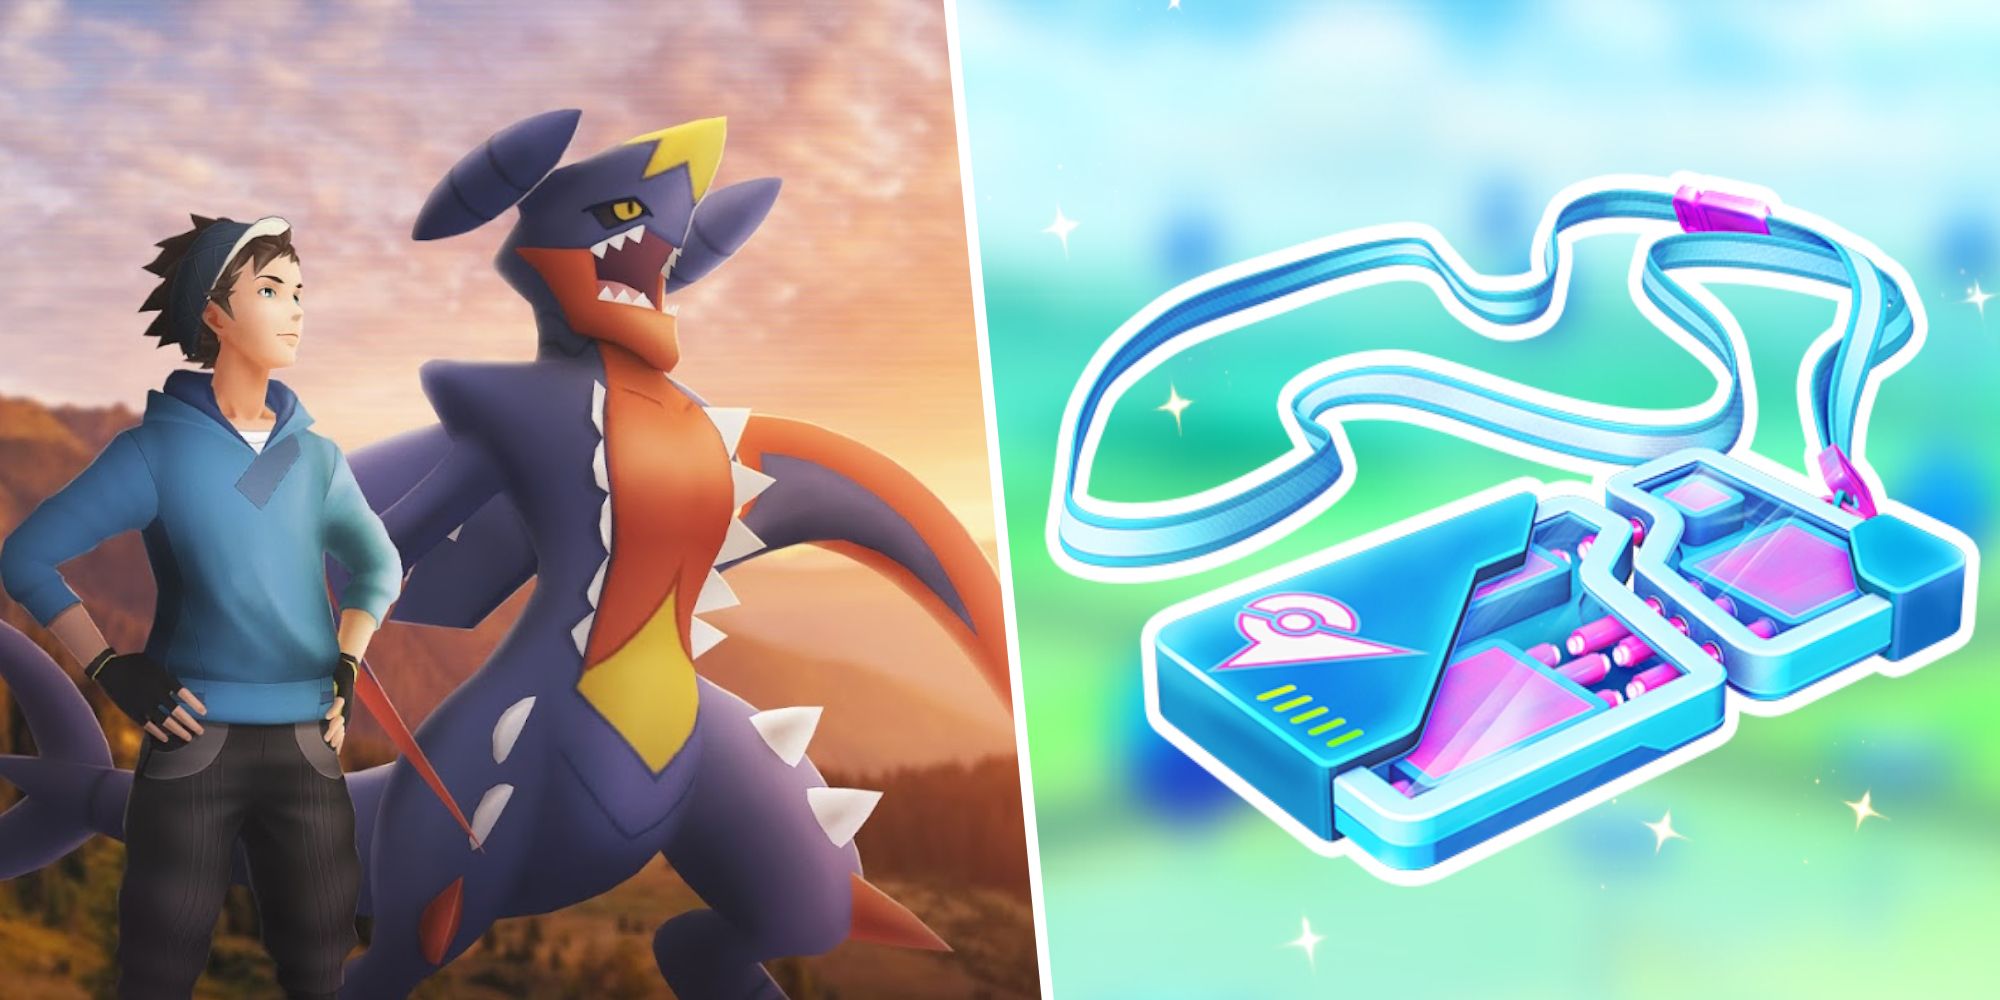 Mega Garchomp Pokémon GO Raid Battle Tips